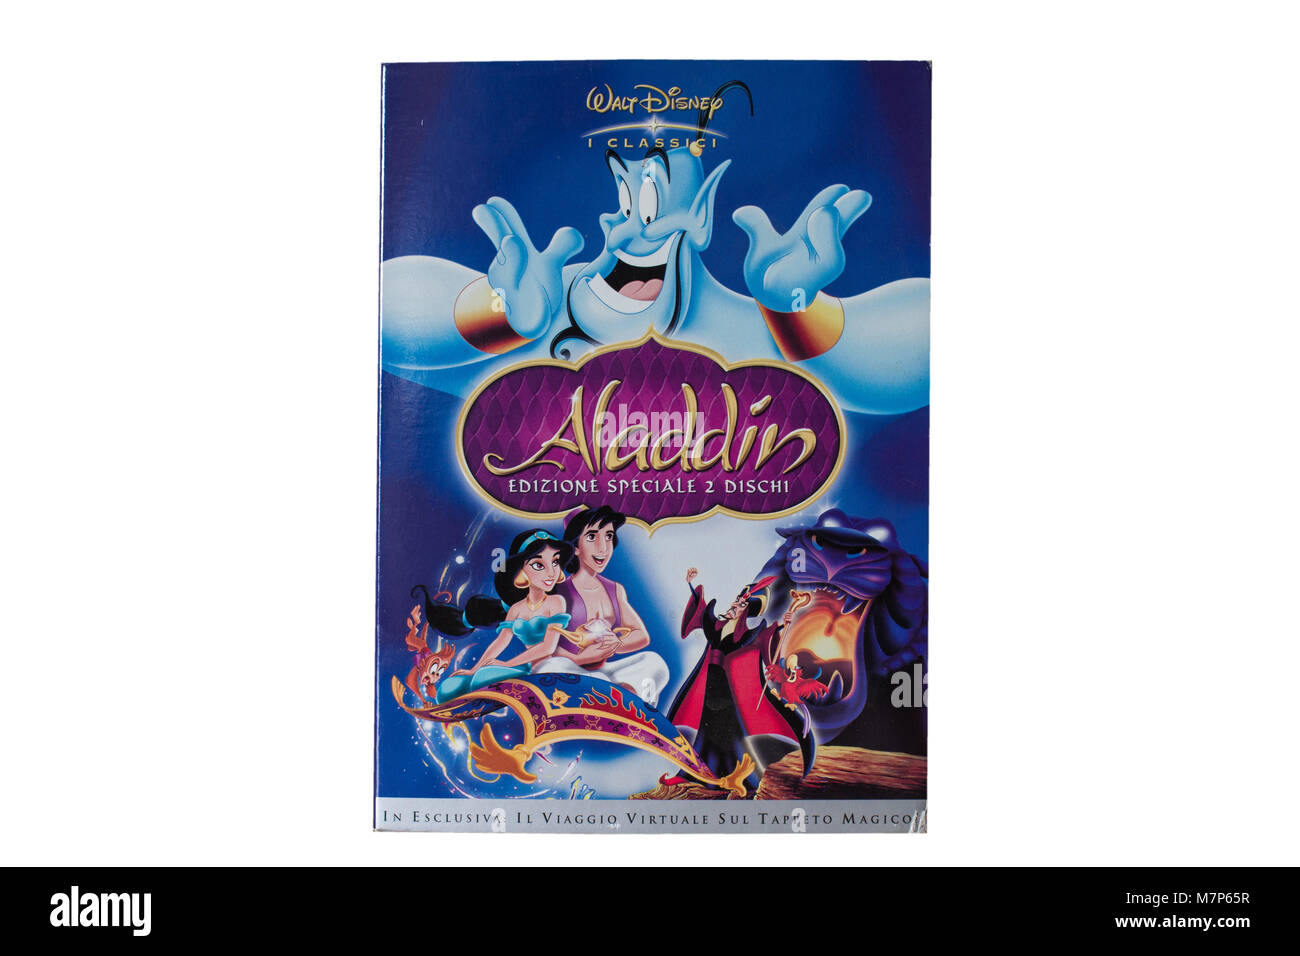 Original DVD 'Aladdin' by Walt Disney Stock Photo - Alamy